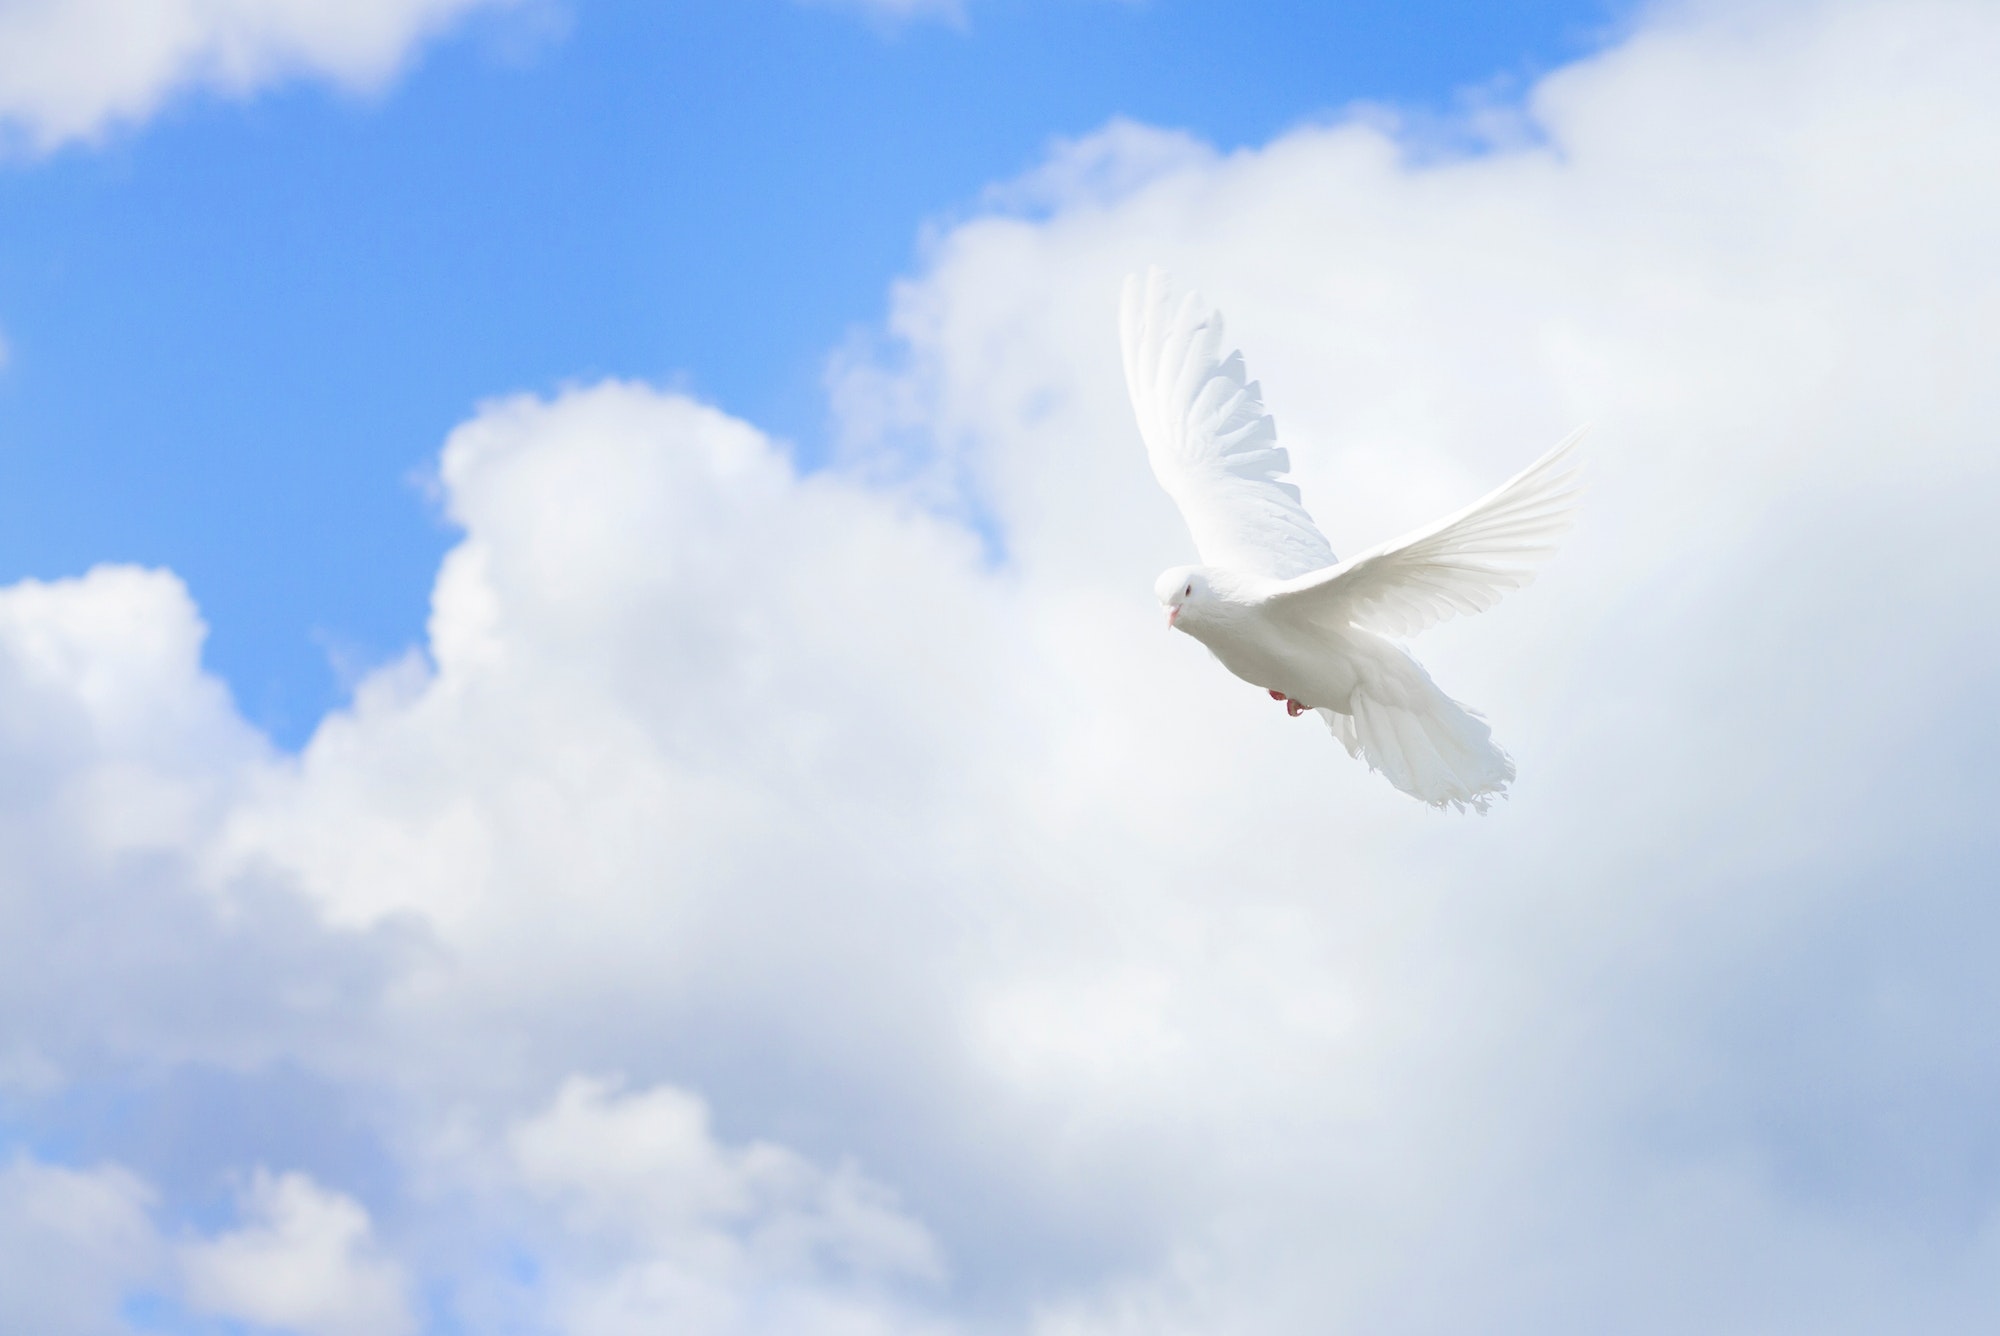 White pigeons,dove flying on blue sky